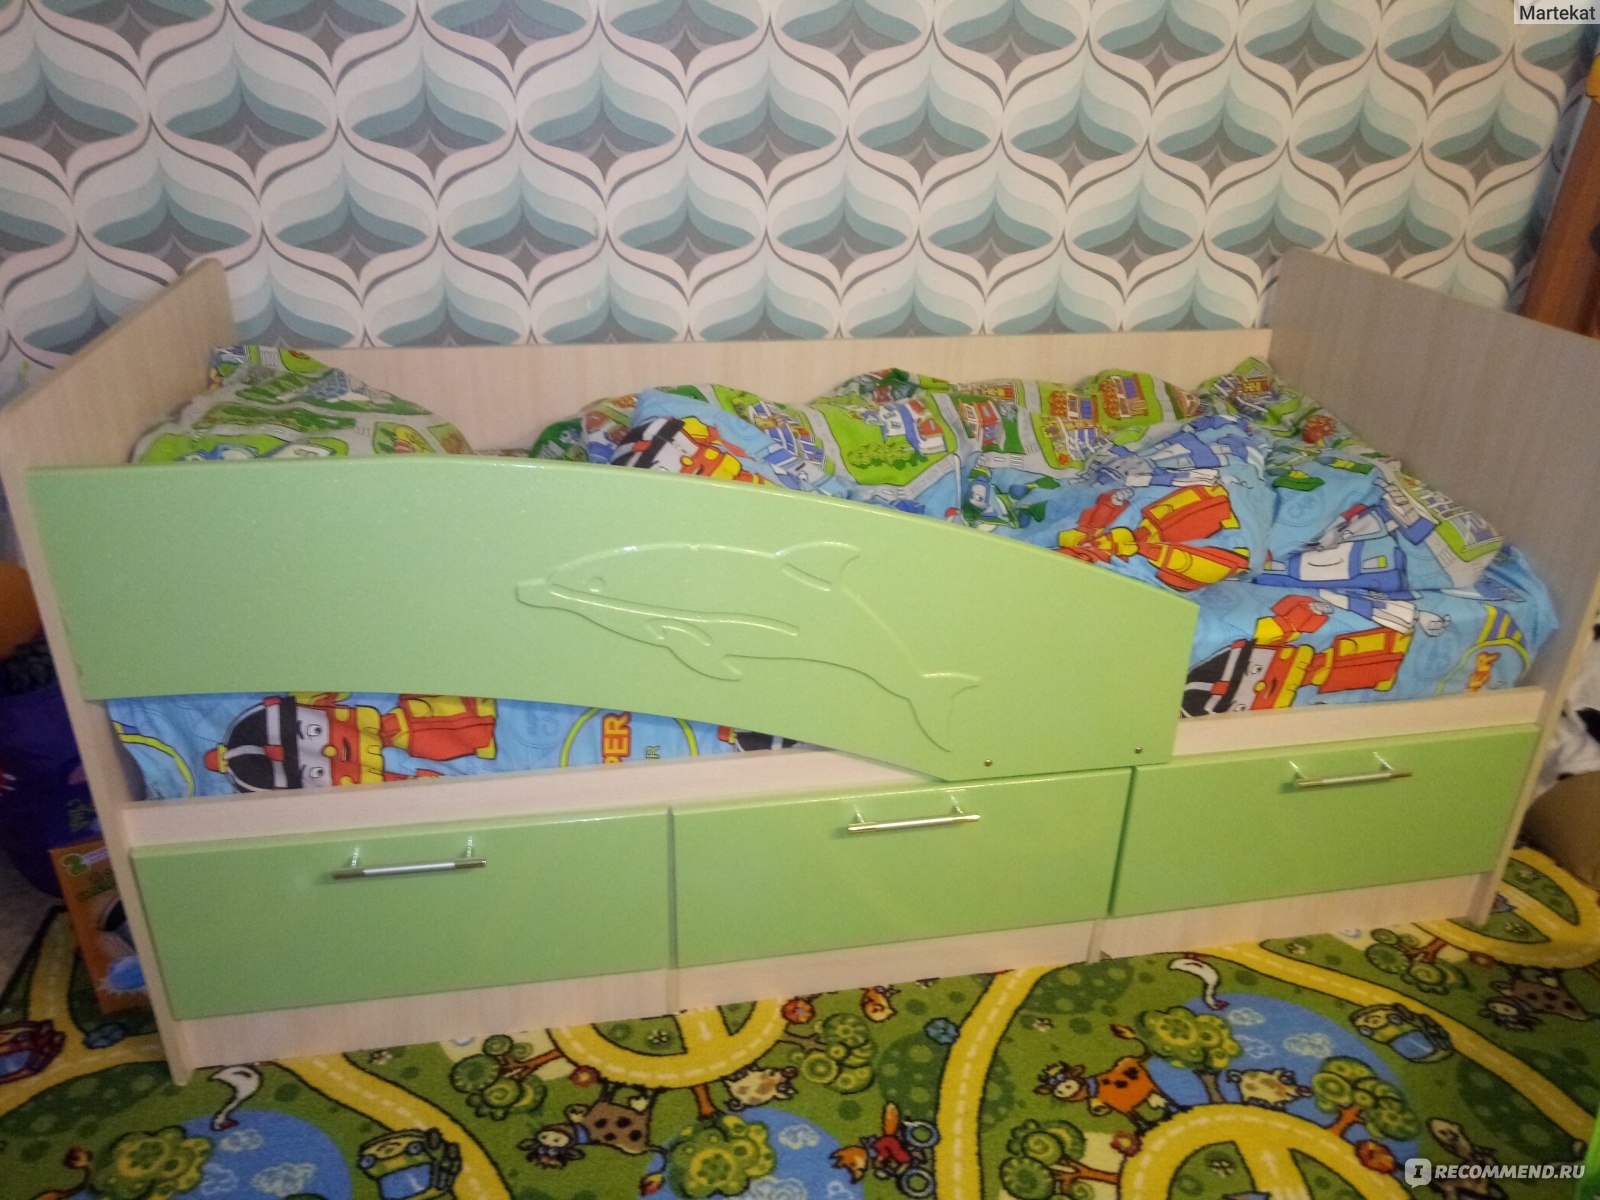 Сборка кровати дельфин. Кроватка Дельфин ваниль 160 80 Форес. Детская кровать Дельфин 160х80 с ящиками. Кровать детская Дельфин с шкафом. Кровать Дельфин с ящиками сборка.